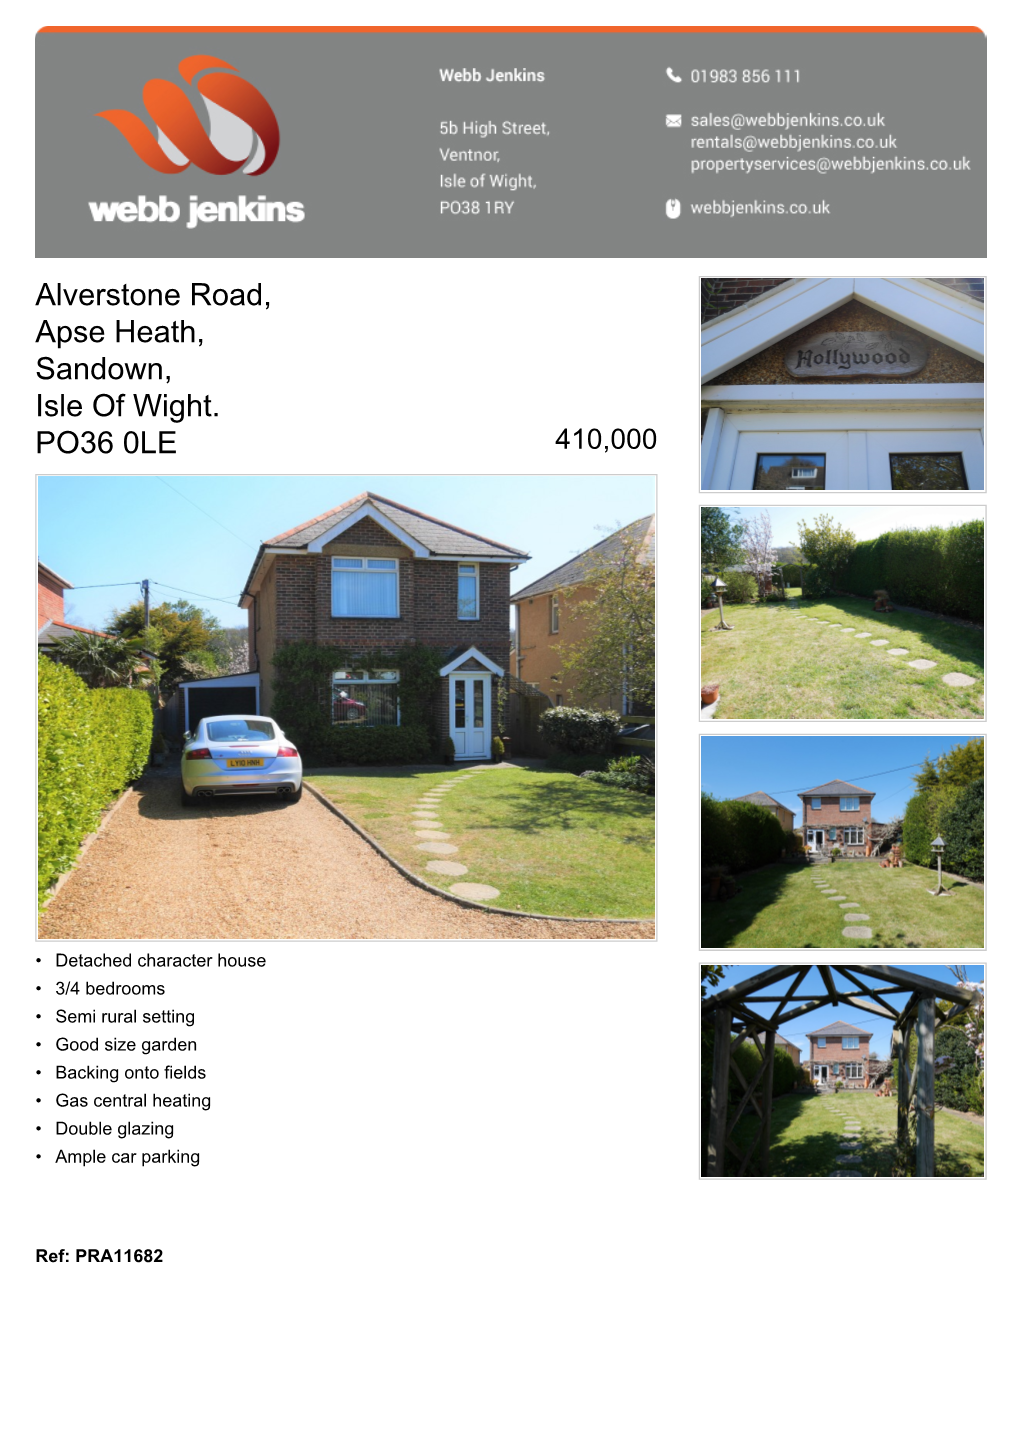 Alverstone Road, Apse Heath, Sandown, Isle of Wight. PO36 0LE 410,000